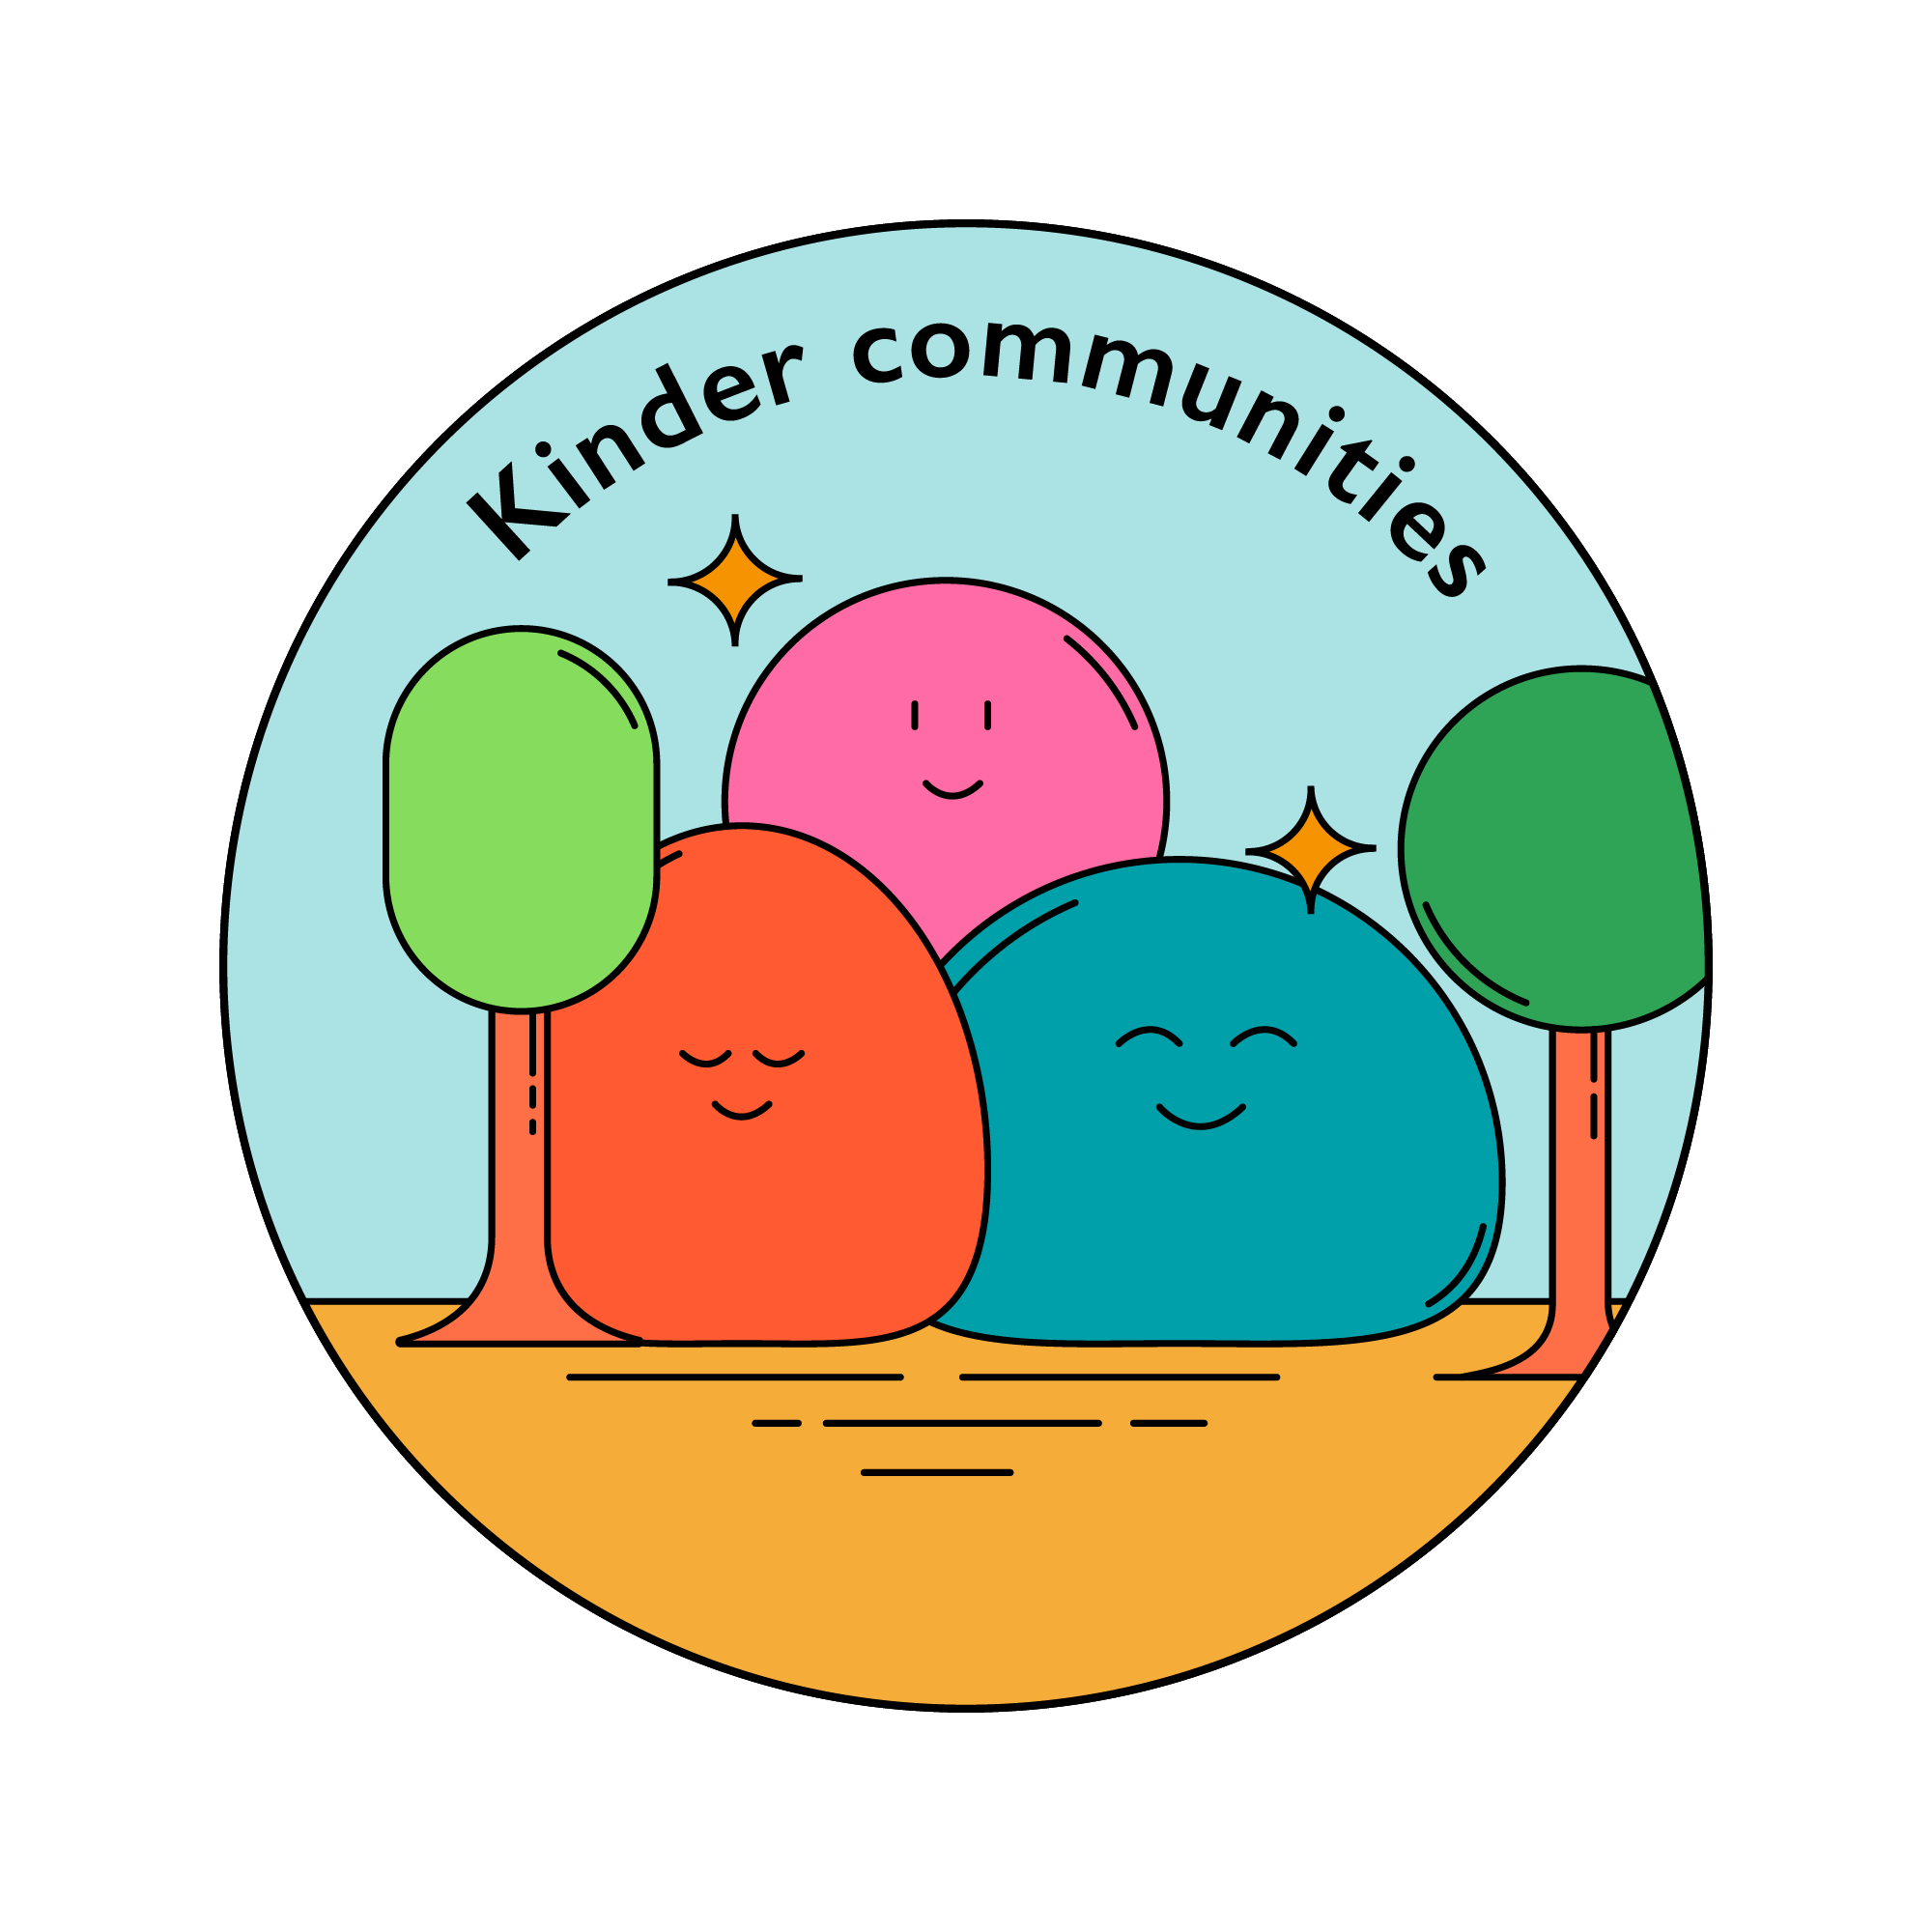 Kinder communities